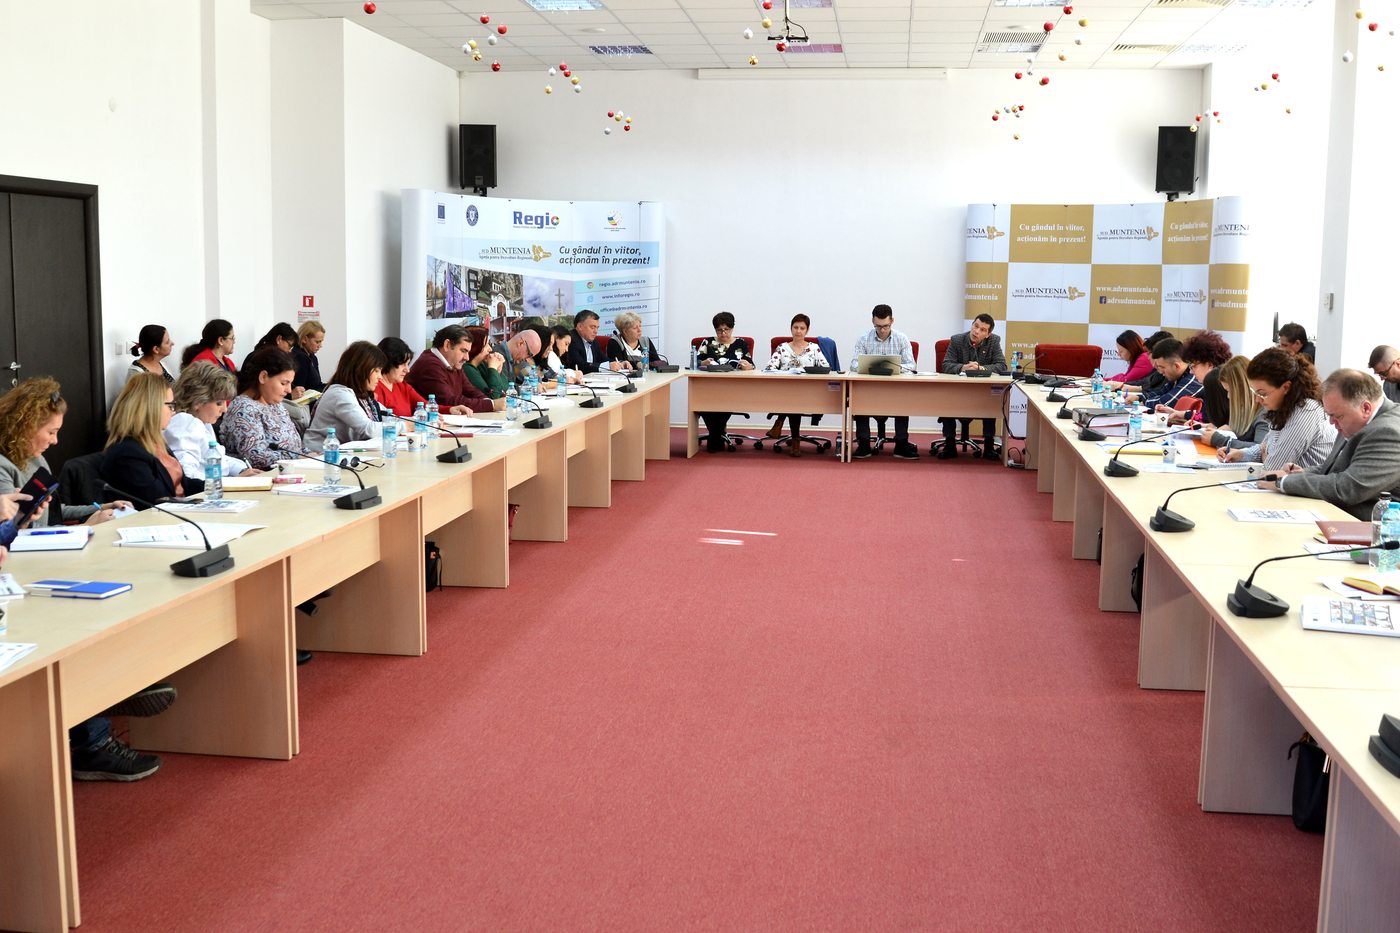 Beneficiarii de fonduri Regio din Sud Muntenia, la prima sesiune instructivă din acest an